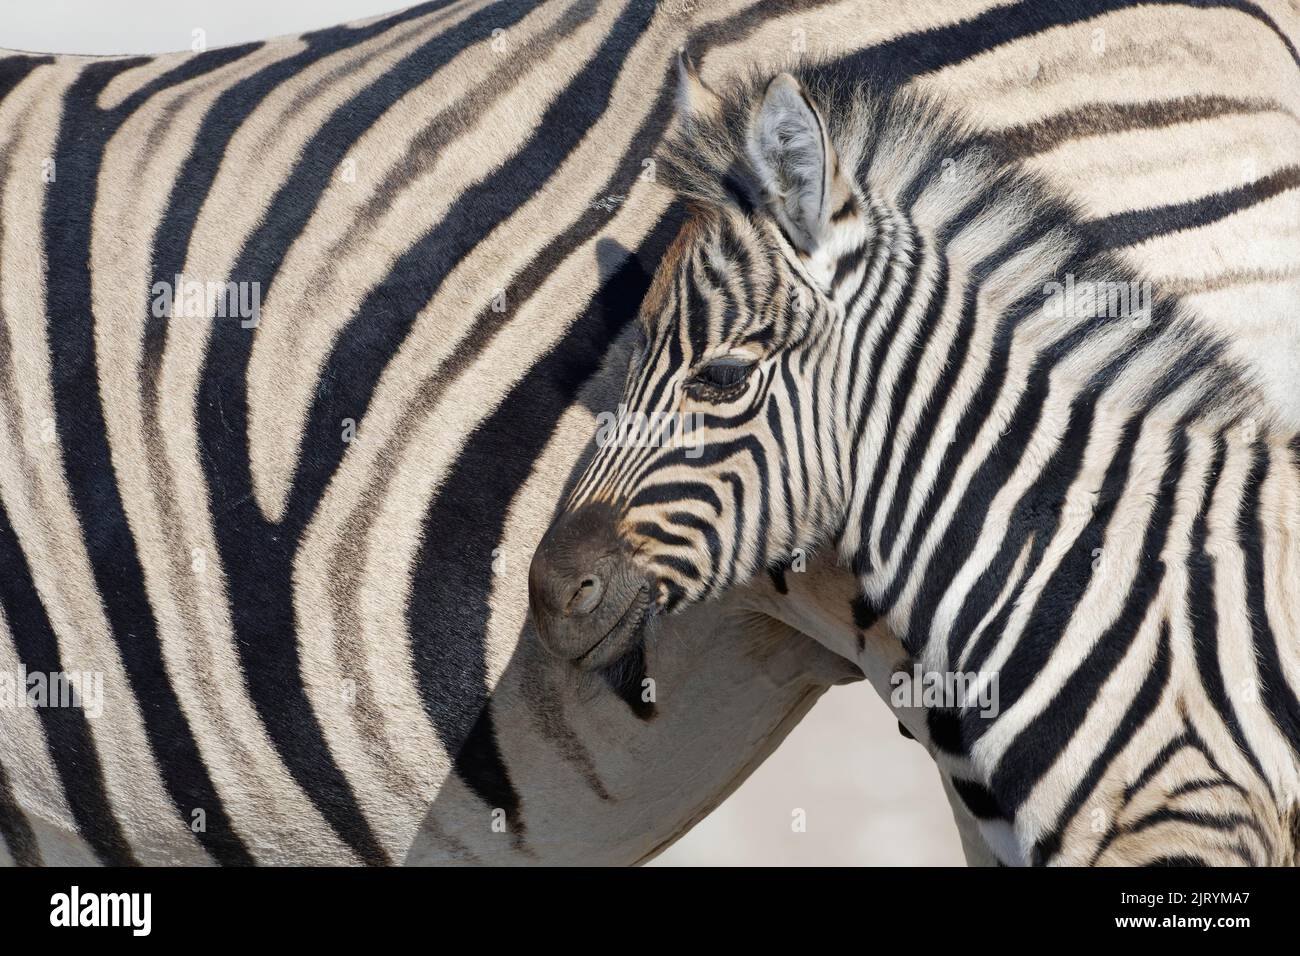 Zèbres de Burchells (Equus quagga burchellii), poulain adulte et zébré, portrait d'animal, tête profil, Parc national d'Etosha, Namibie, Afrique Banque D'Images